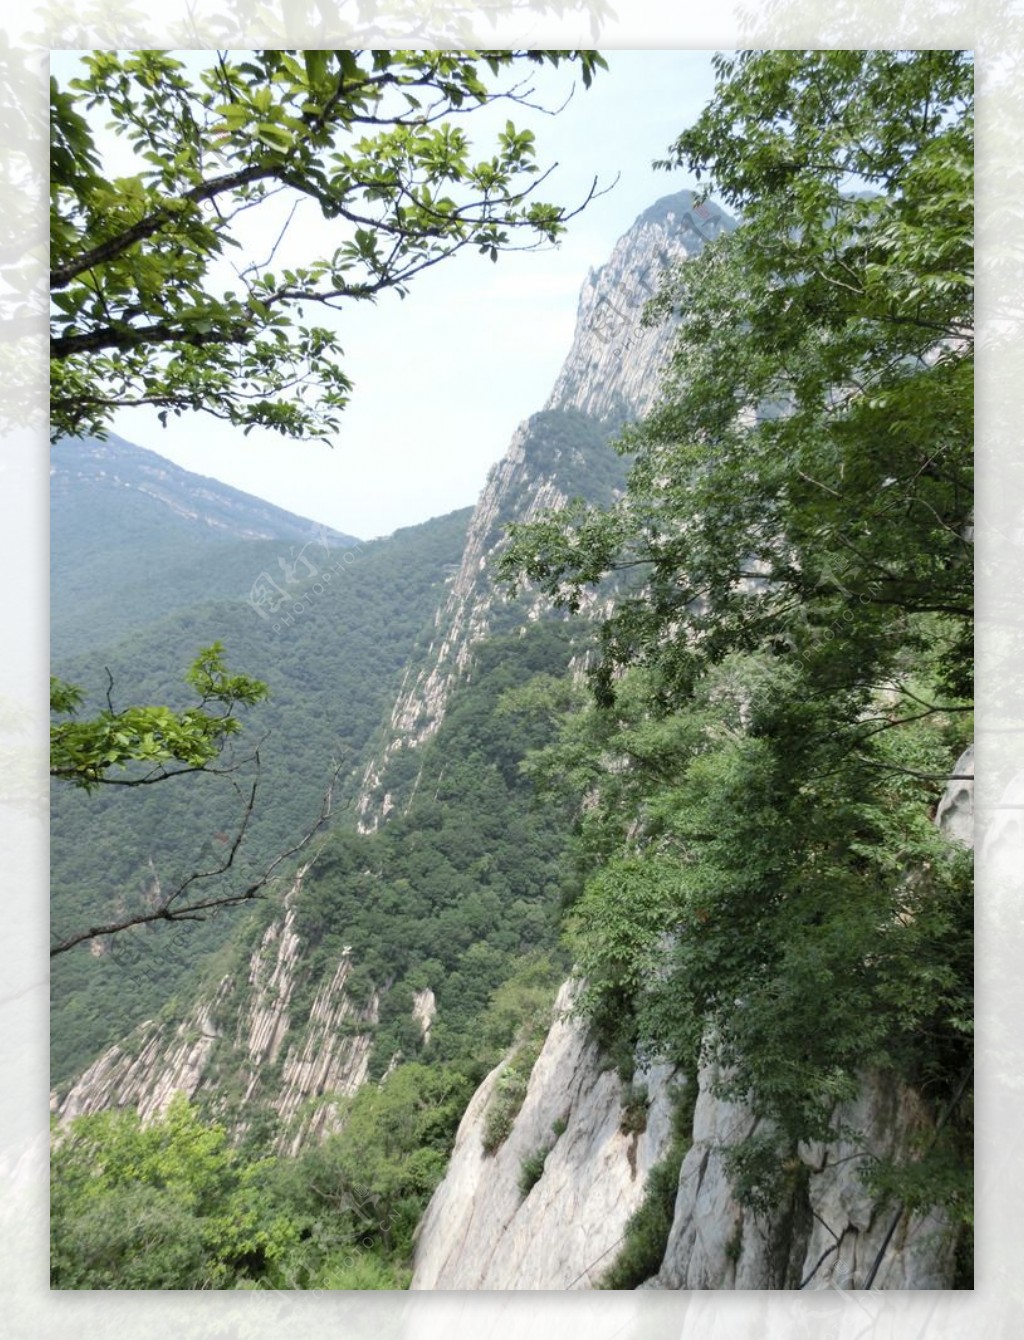 中岳嵩山景色图片